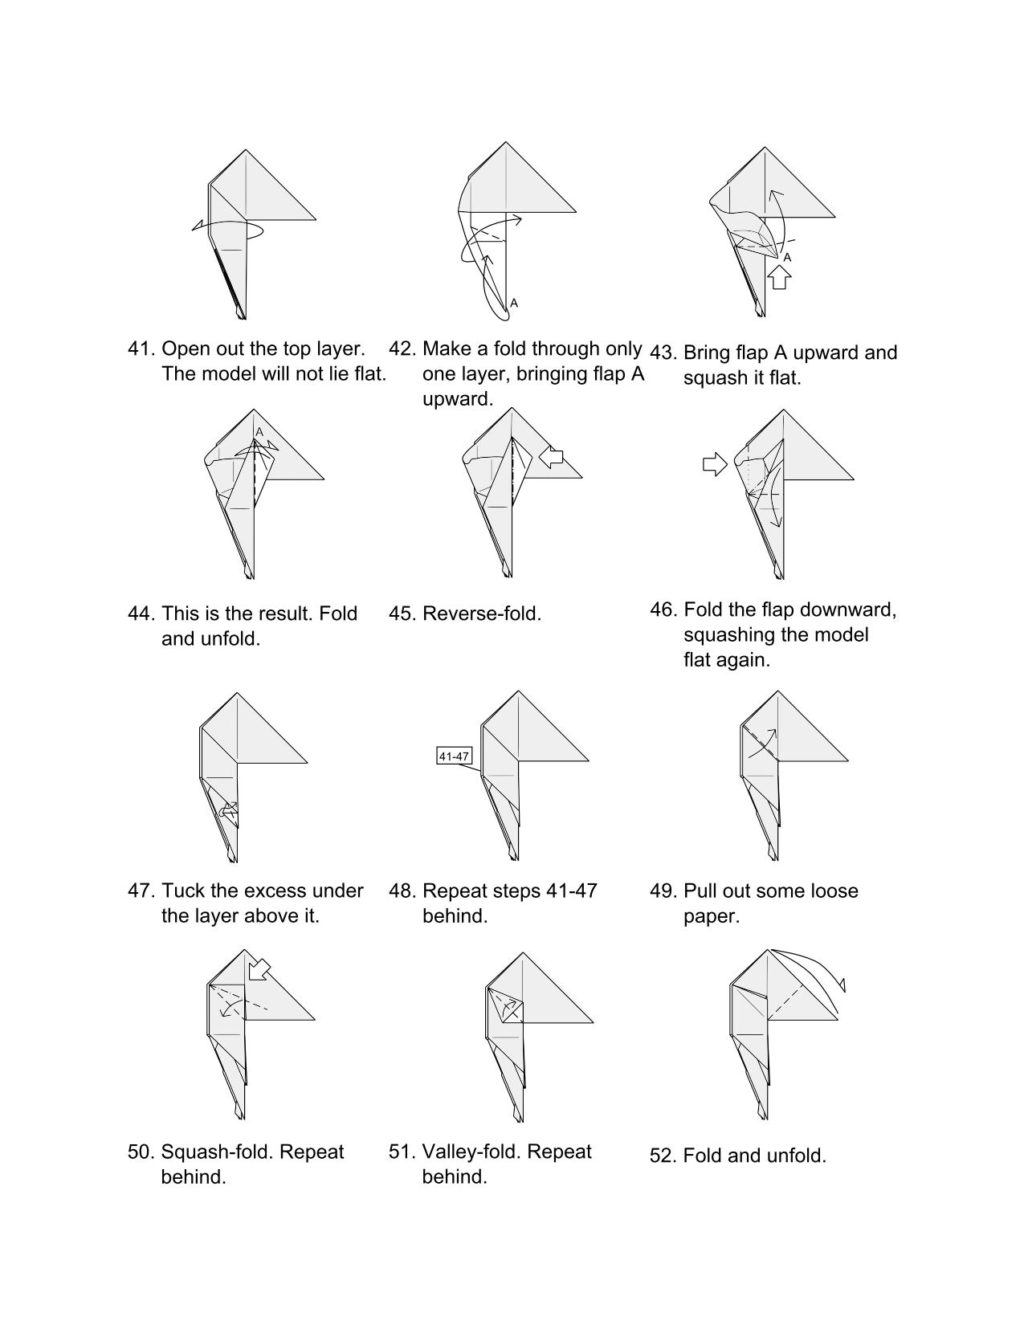 Оригами из бумаги волк схема